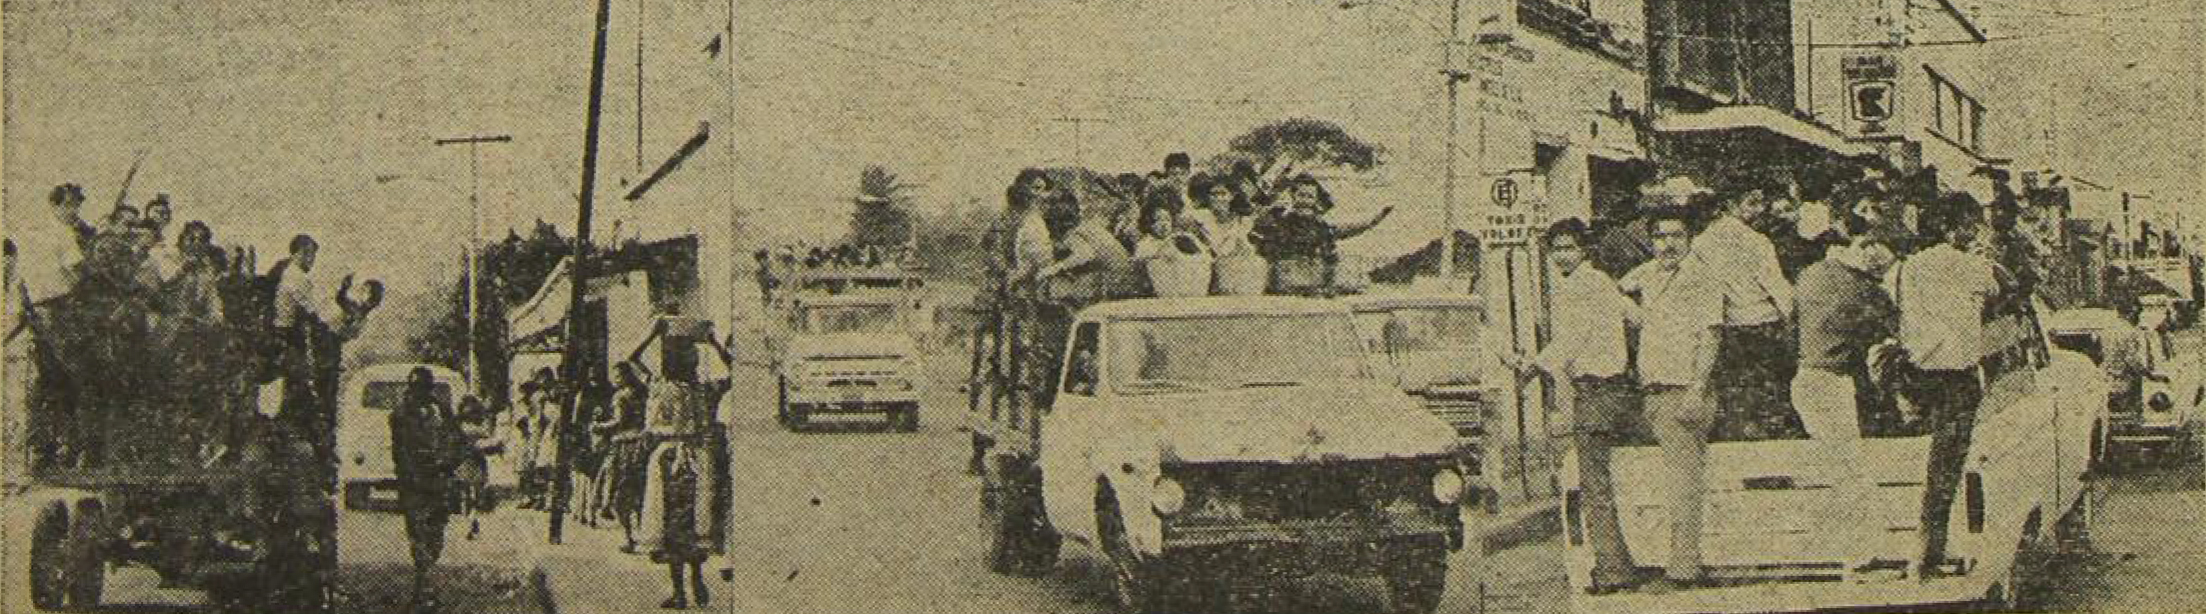 Vehículos particulares prestaron servicio de transporte en varias colonias capitalinas, como una alternativa a la falta de autobuses. (Foto Prensa Libre: Hemeroteca)